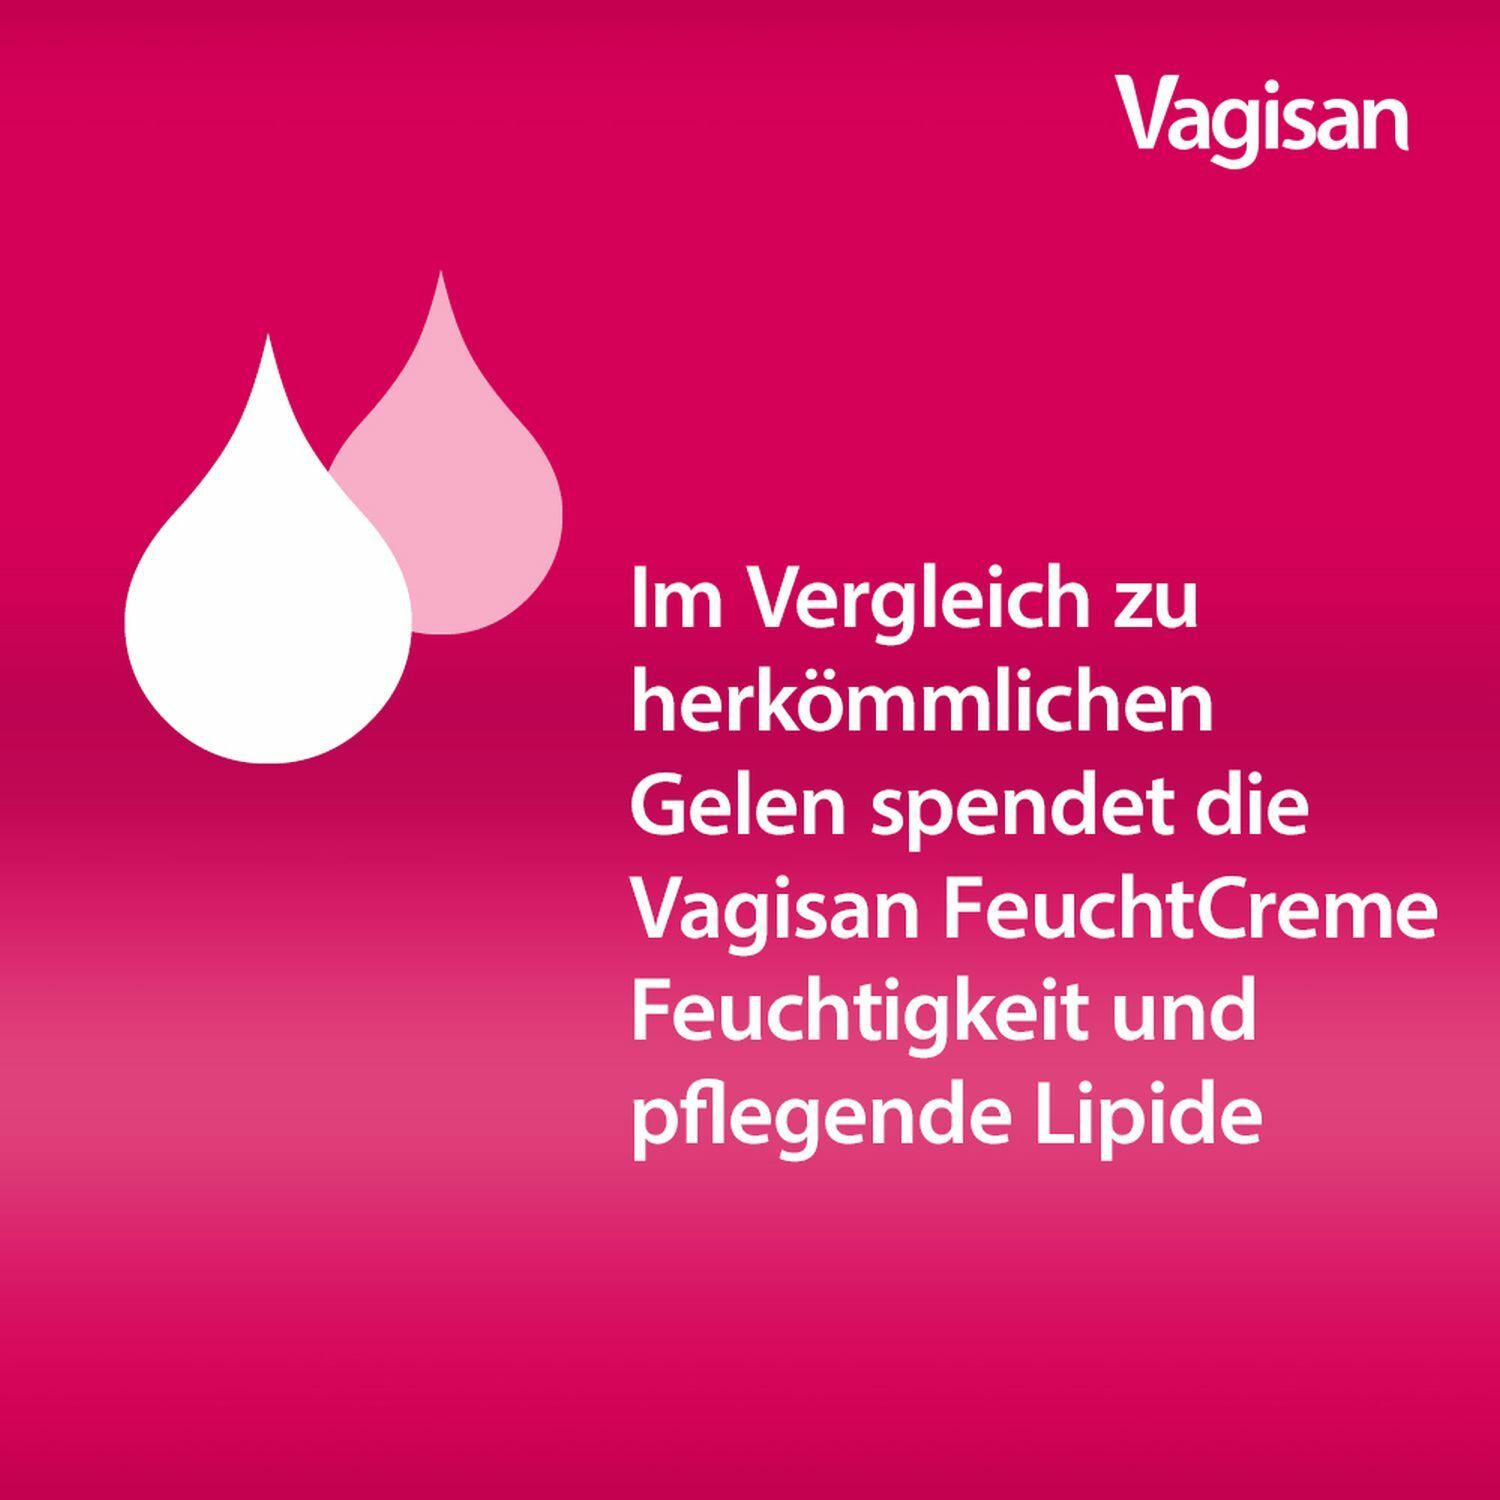 Vagisan FeuchtCreme: Hormonfreie Vaginalcreme bei trockener Scheide – auch vor dem Geschlechtsverkehr